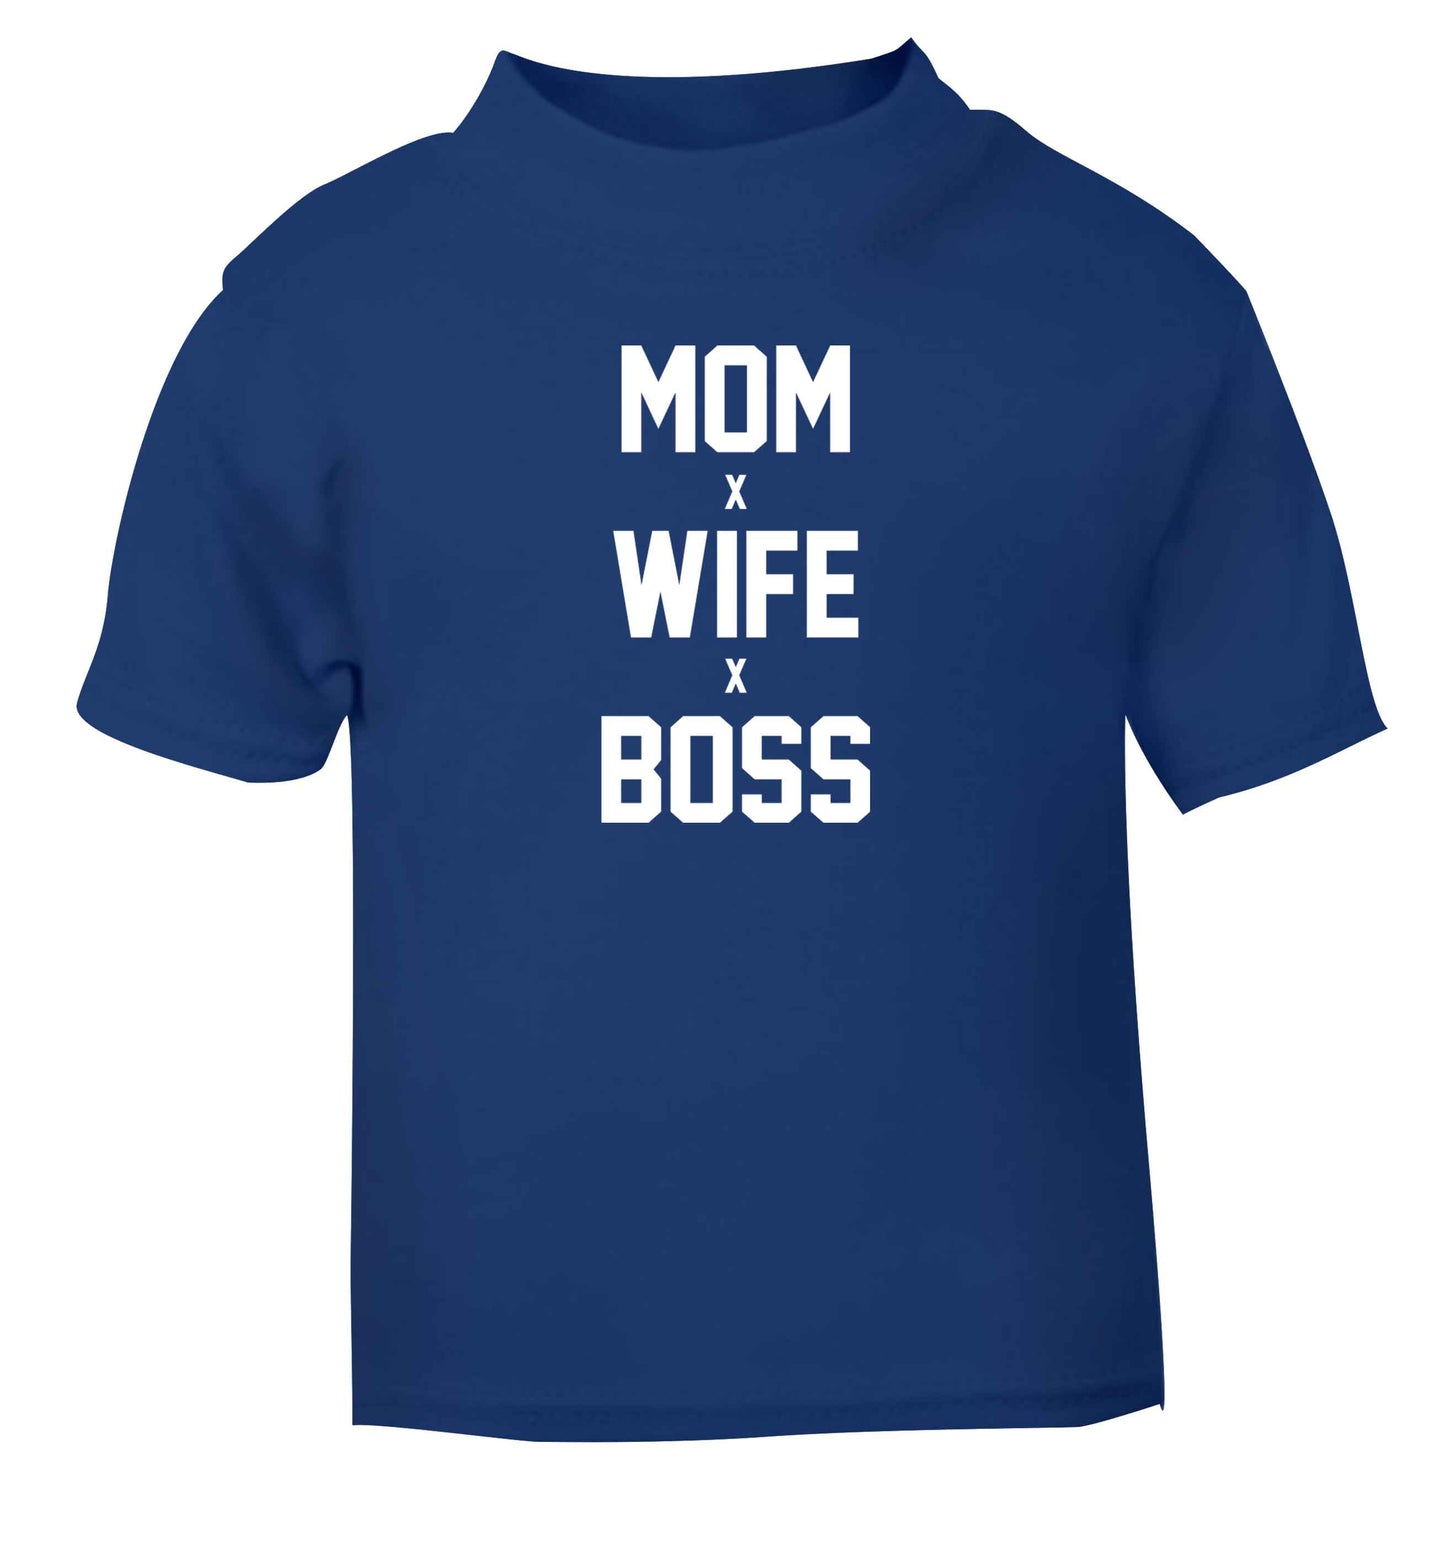 Mum wife boss blue baby toddler Tshirt 2 Years